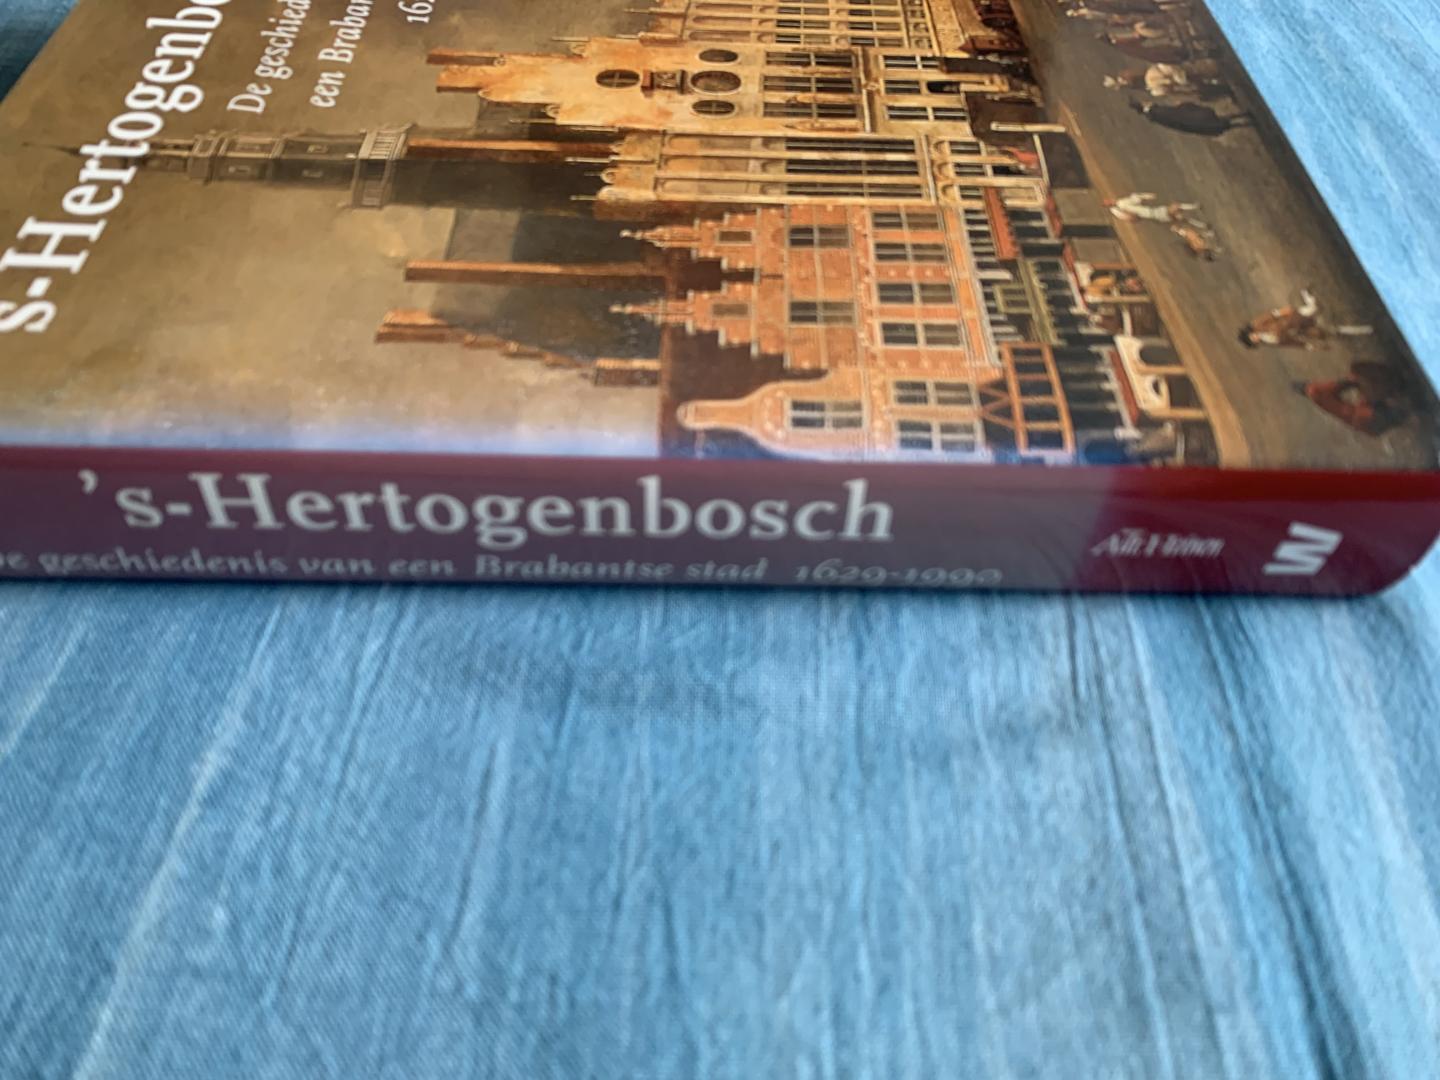 Vos, A. (voorzitter redactie) - 's-Hertogenbosch. De geschiedenis van een Brabantse stad 1629-1990. Incl. bijlage.